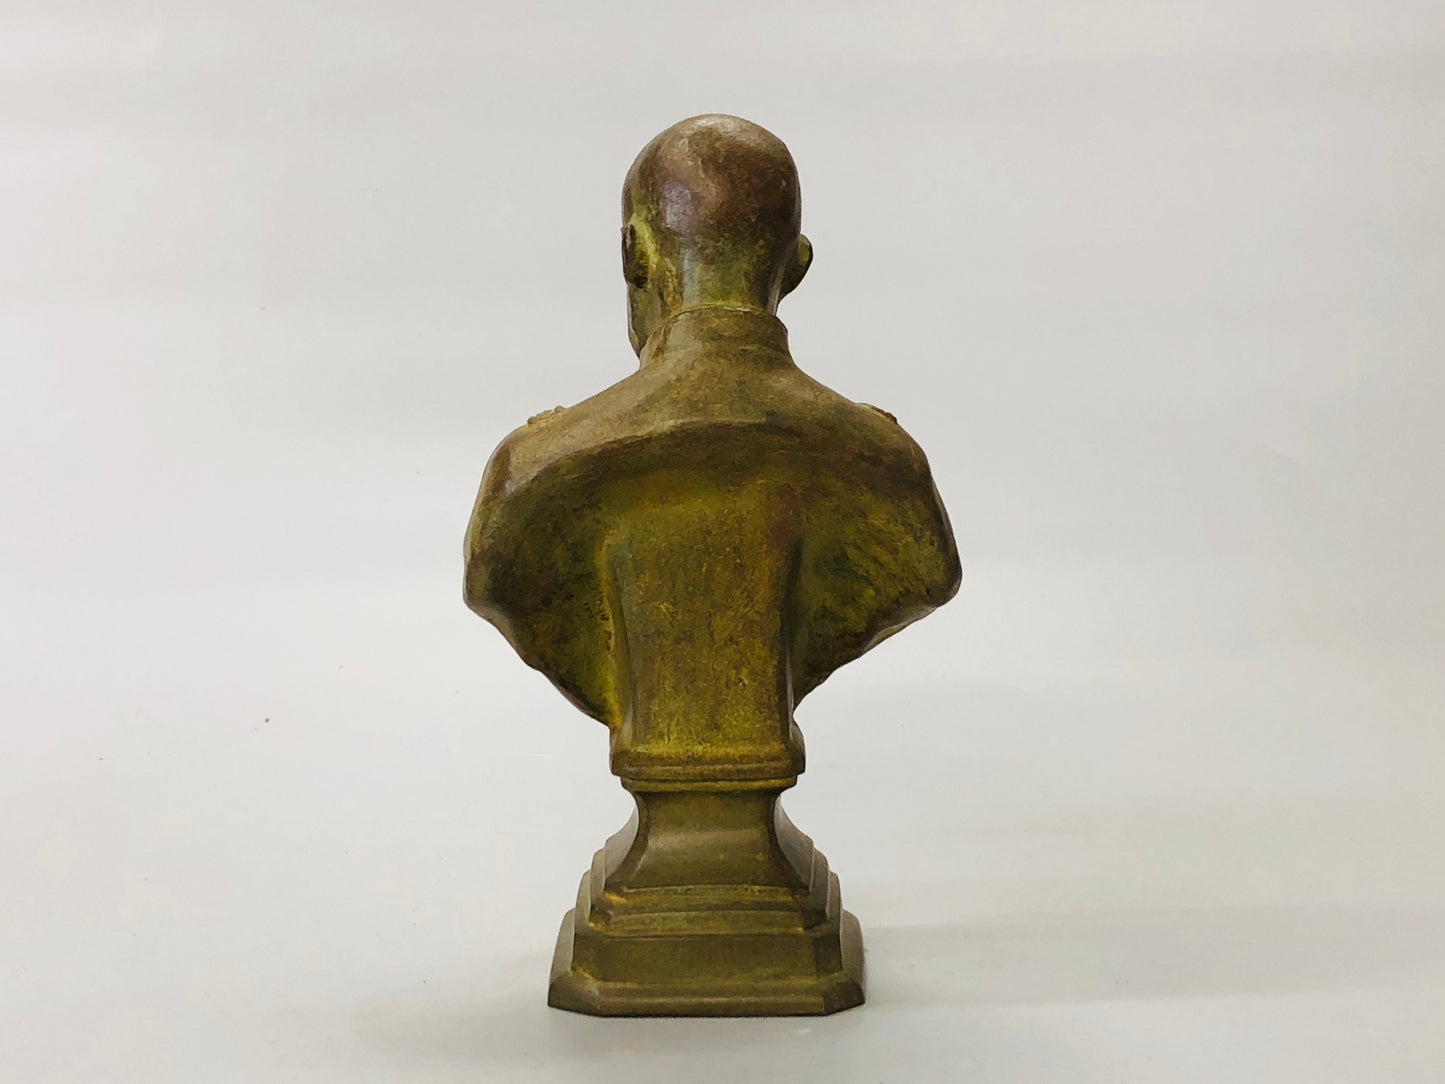 Y5294 Imperial Japan Army Bronze statue General Nogi figurine Japan WW2 vintage